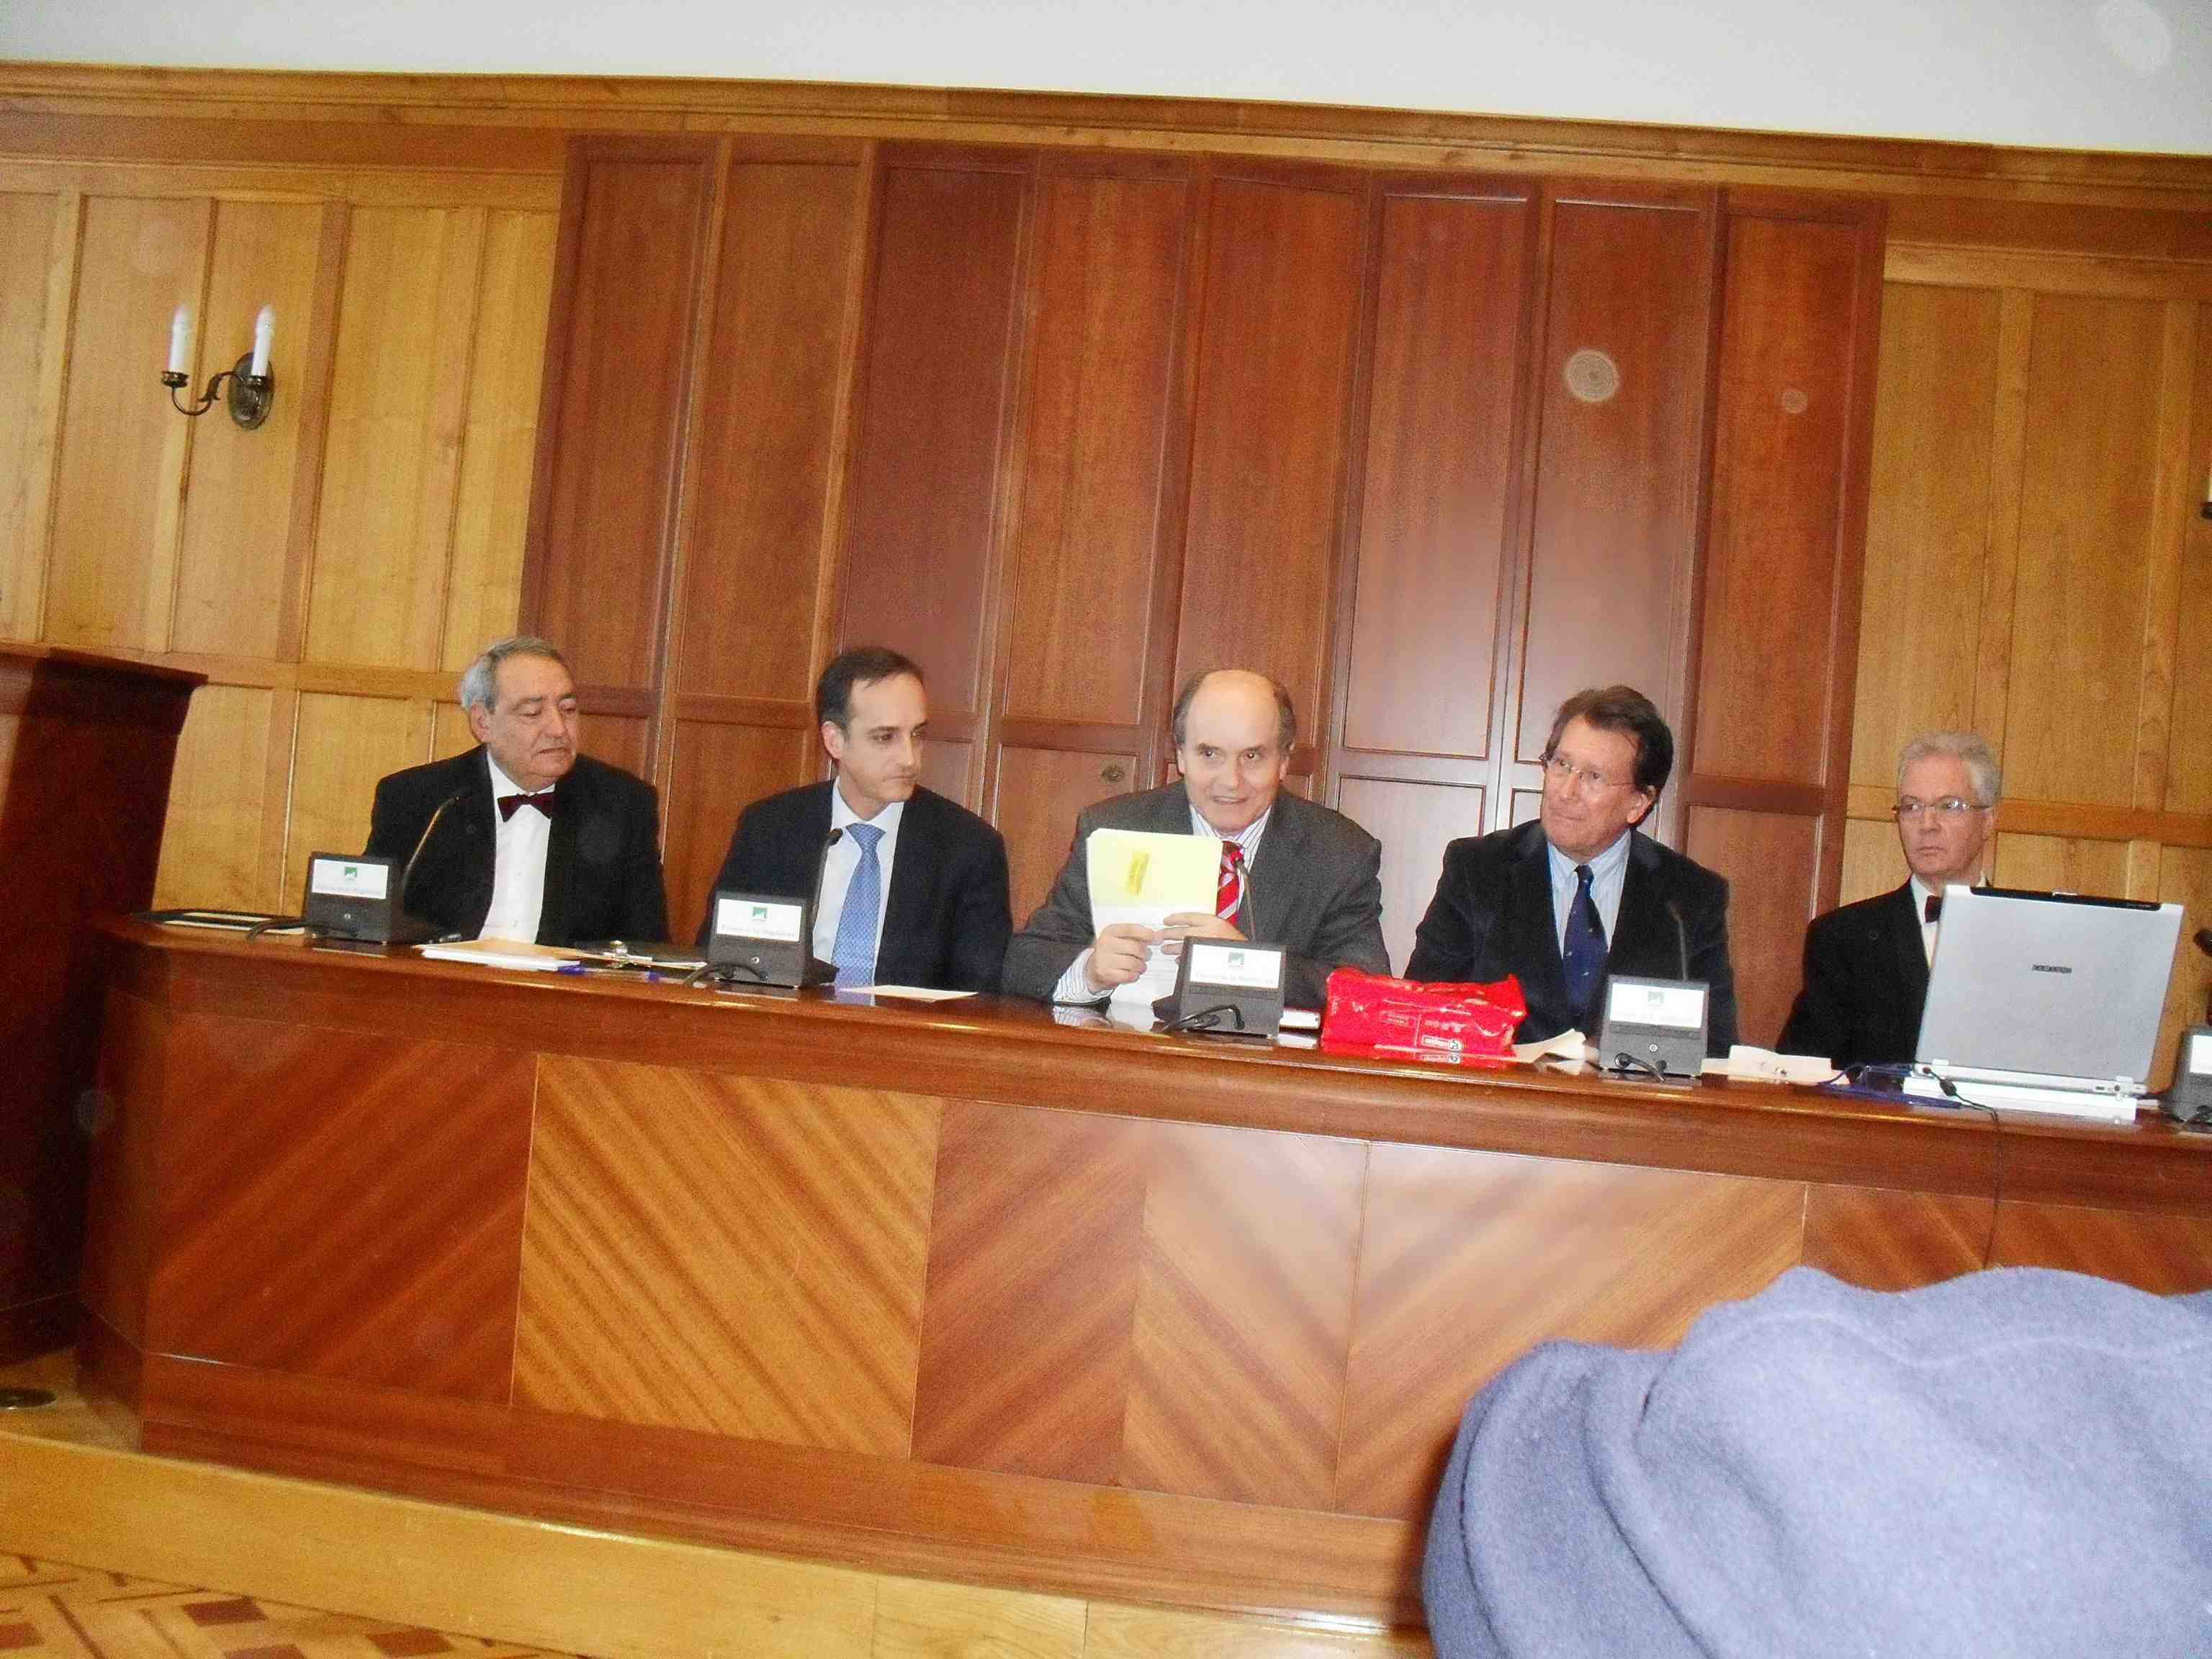 Clausura del Acto Académico, con representación del Ayuntamiento de Santander